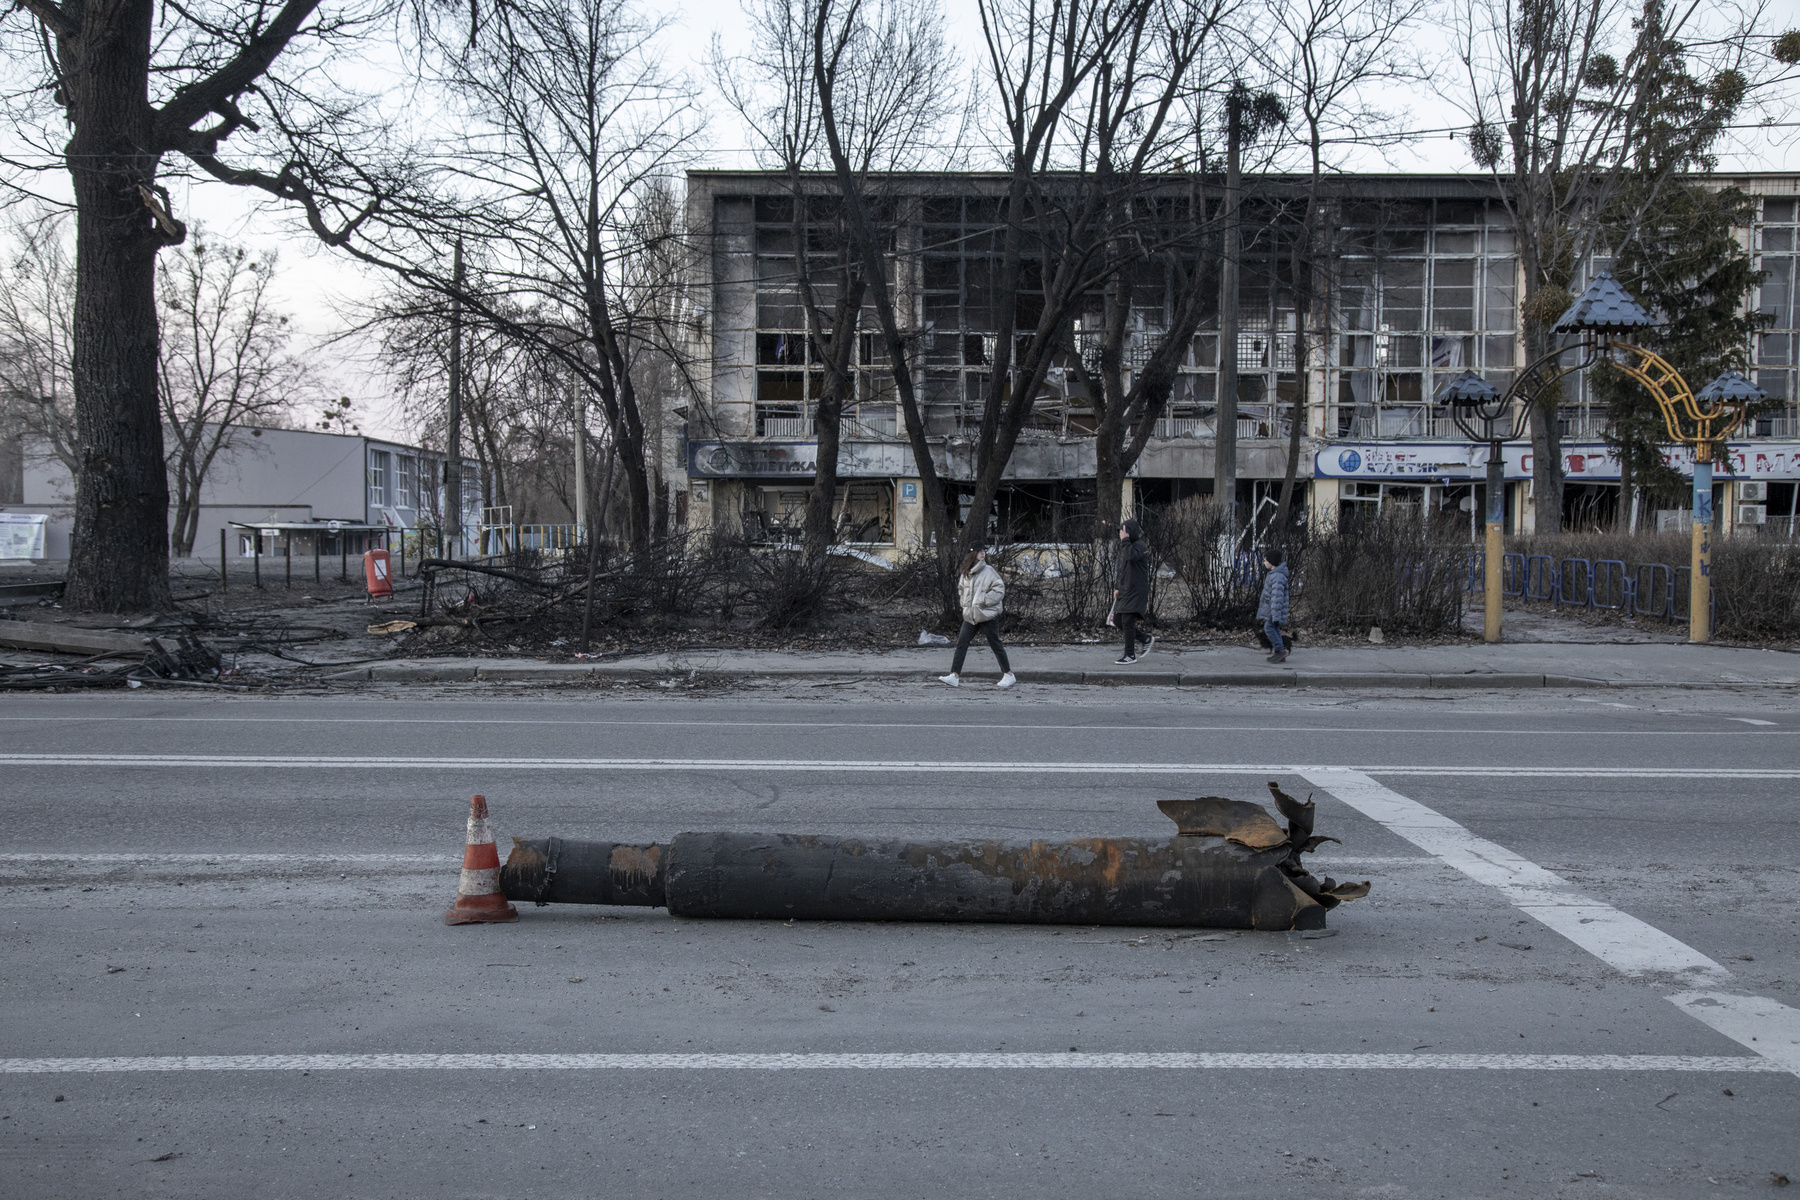 Meglőtt tűzoltóautó egy elhunyt tűzoltó búcsúztatásán 2022. március 19-én Harkivban